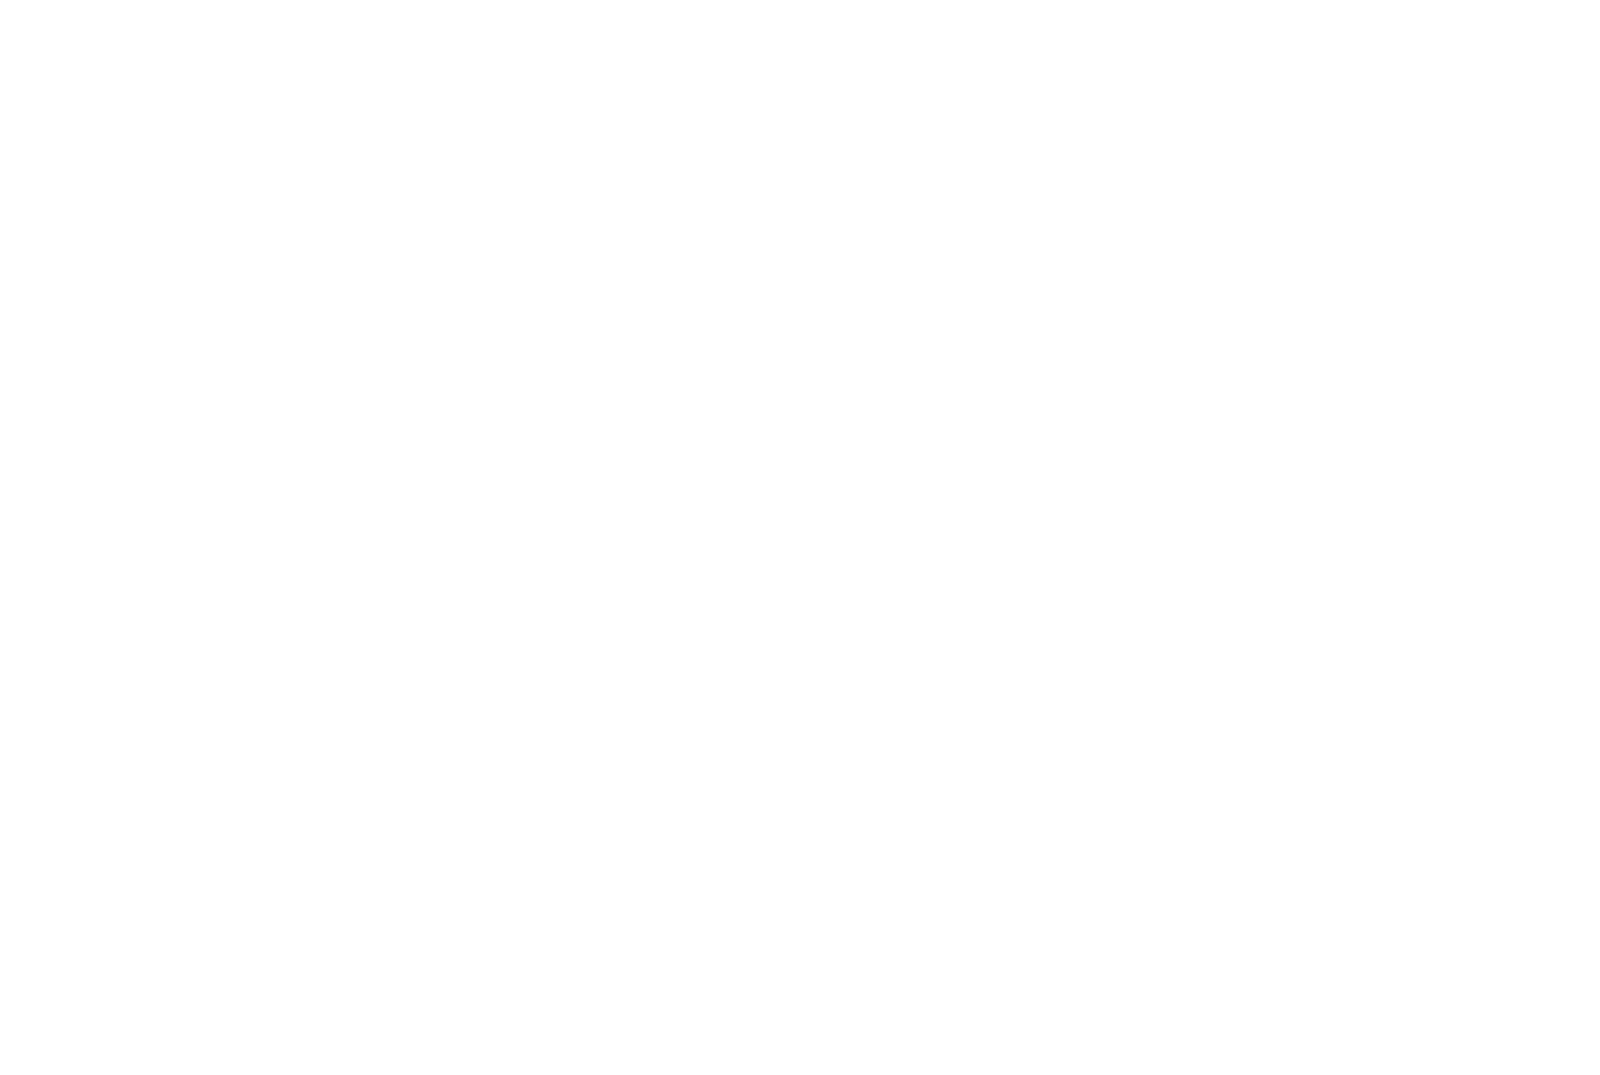 スガ シカオ、ニューアルバム『労働なんかしないで 光合成だけで生きたい』 今春リリースサムネイル画像!